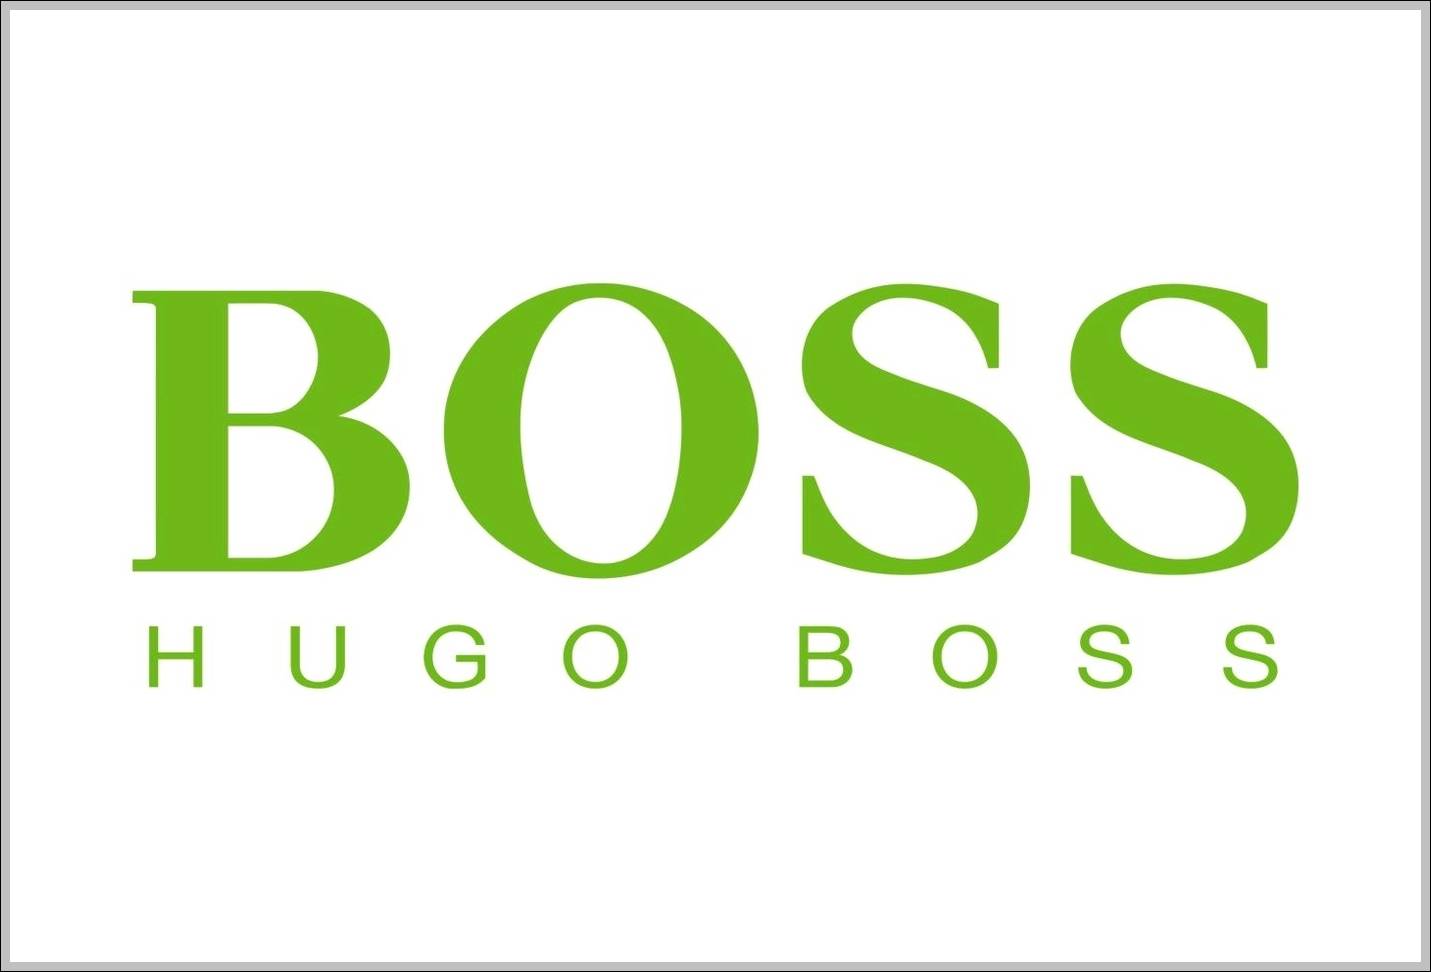 Hugo Boss logo green